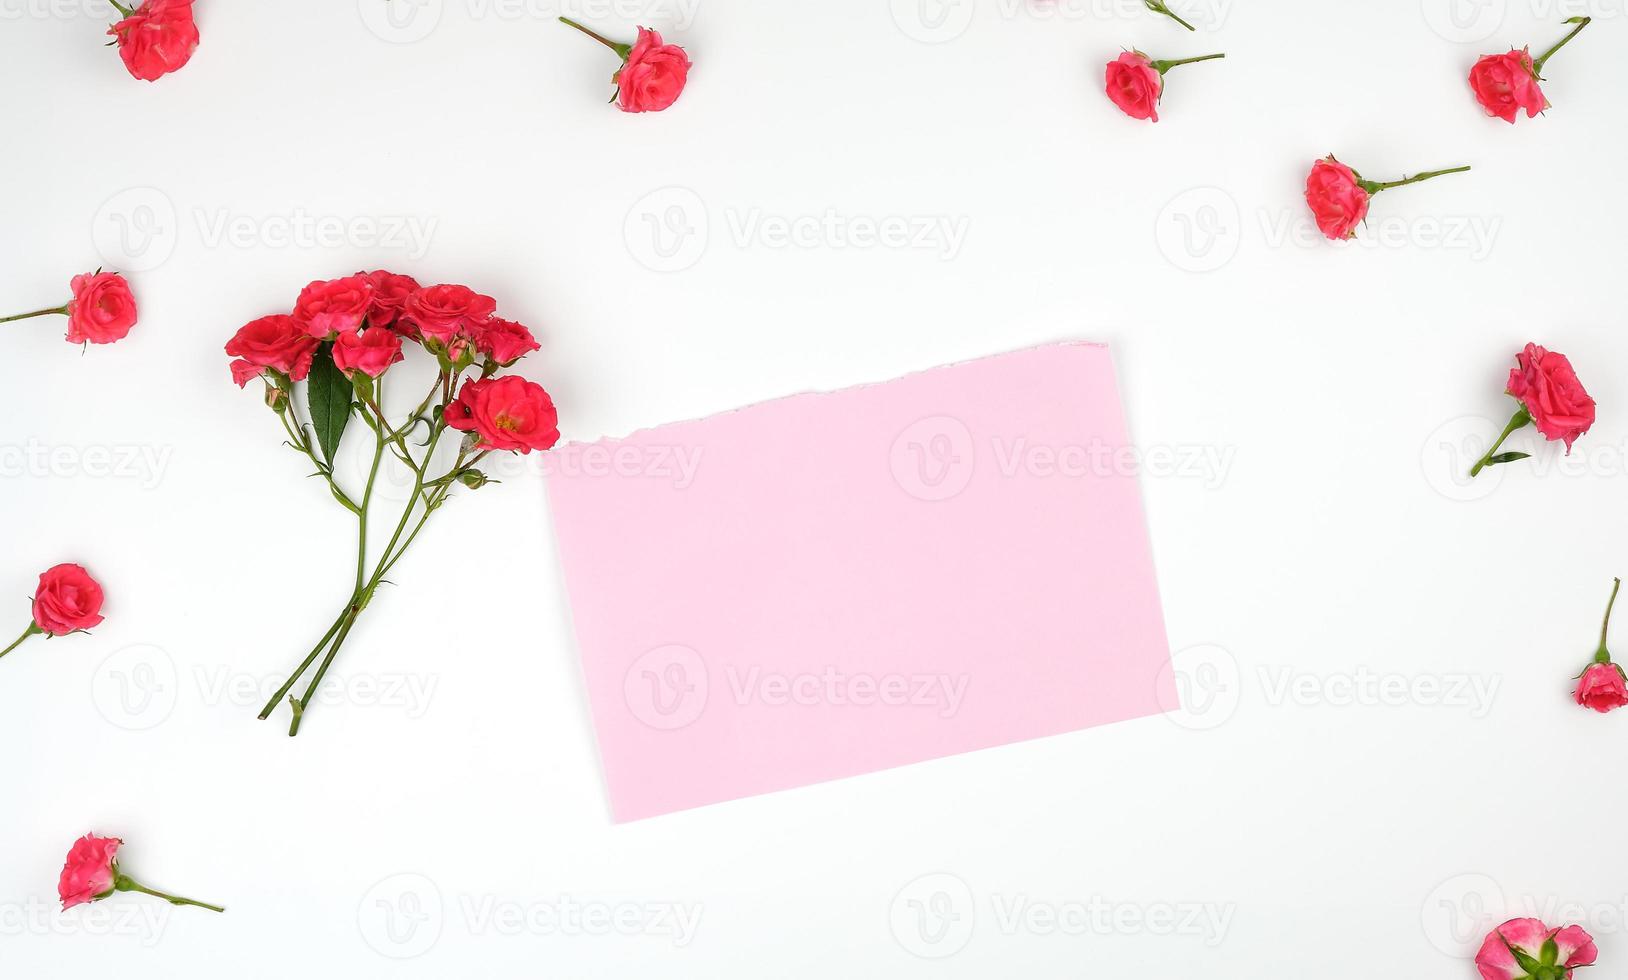 folha de papel vazia e botões florescentes de rosas cor de rosa em um fundo branco foto